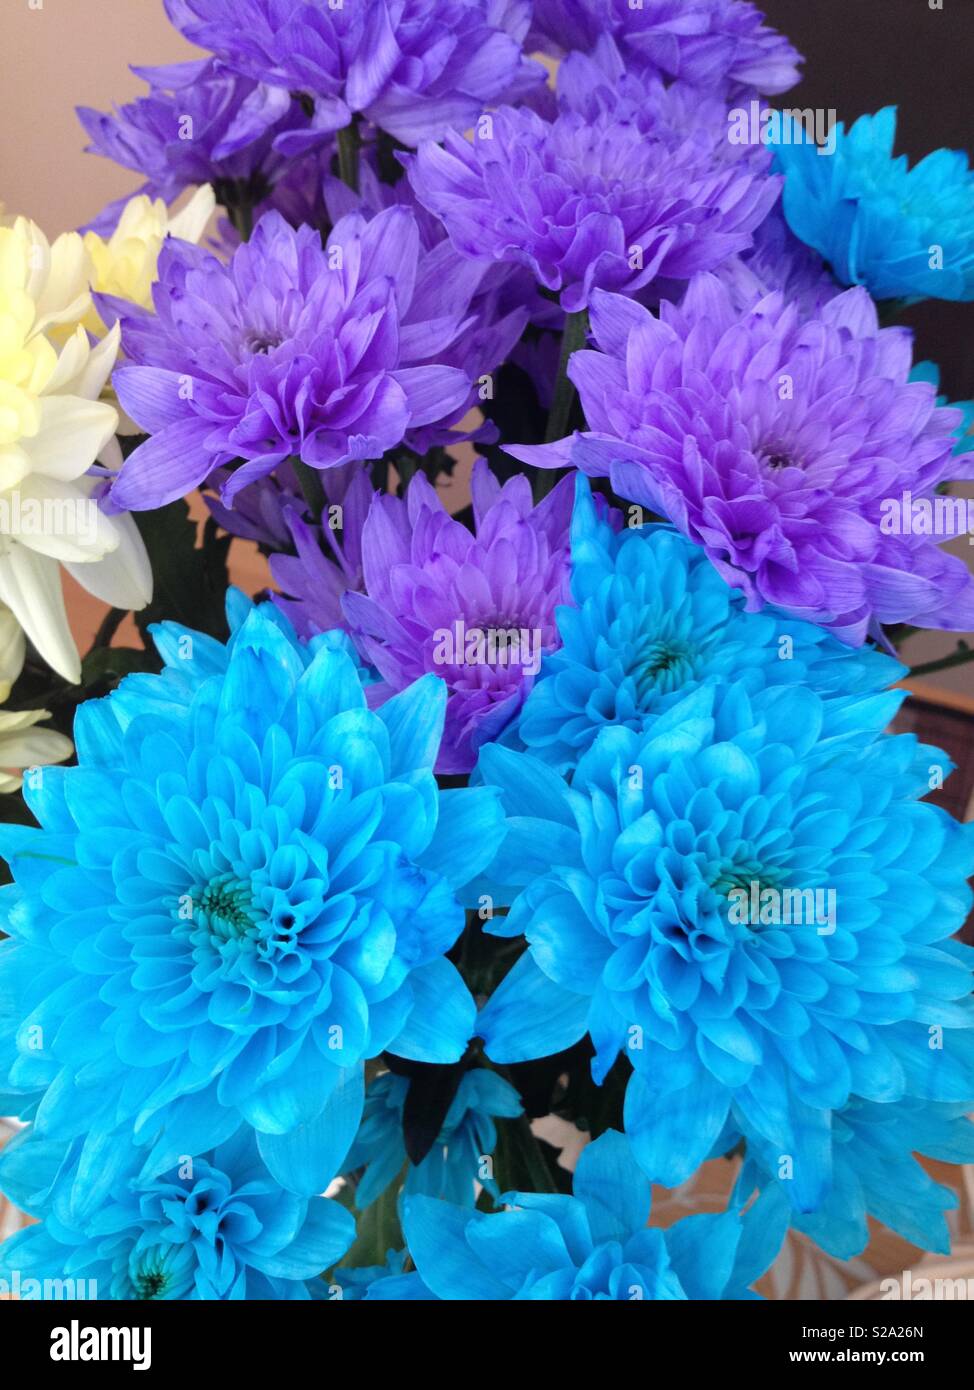 Chrysanthemen türkis blaue Blumen Blumenstrauß Lila und Gelb Stockfoto